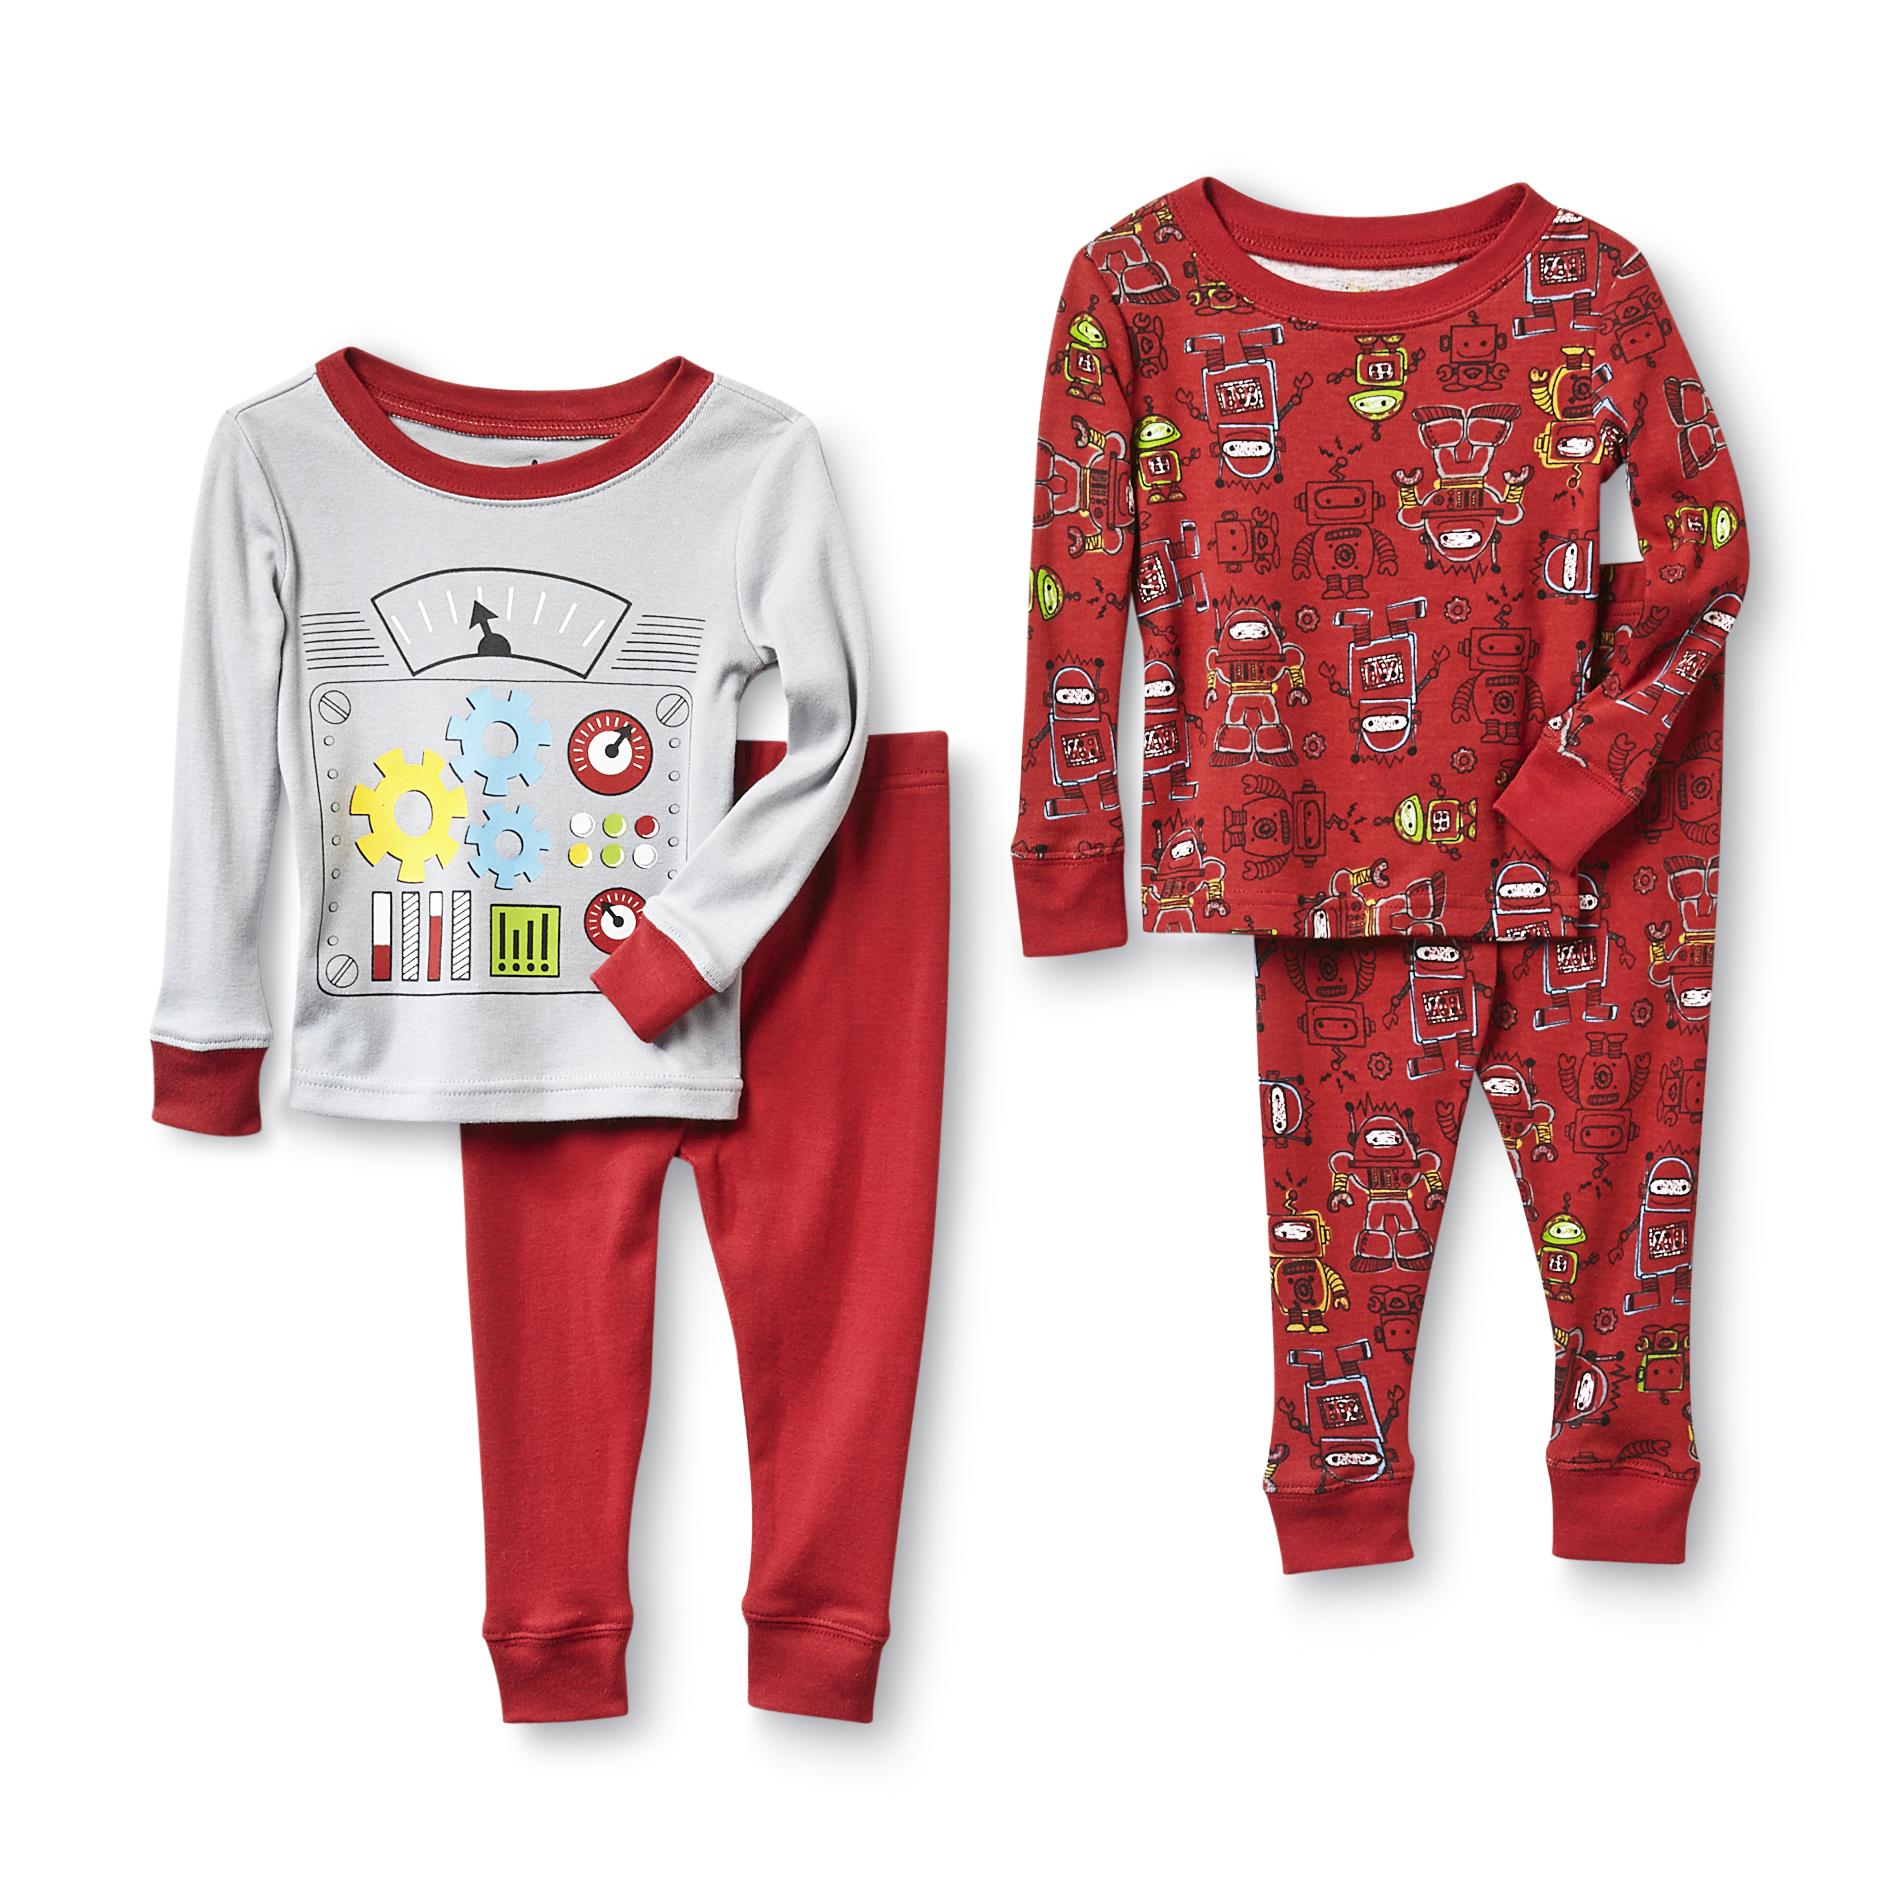 Joe Boxer Infant & Toddler Boy's 2 Pairs Pajamas - Robot